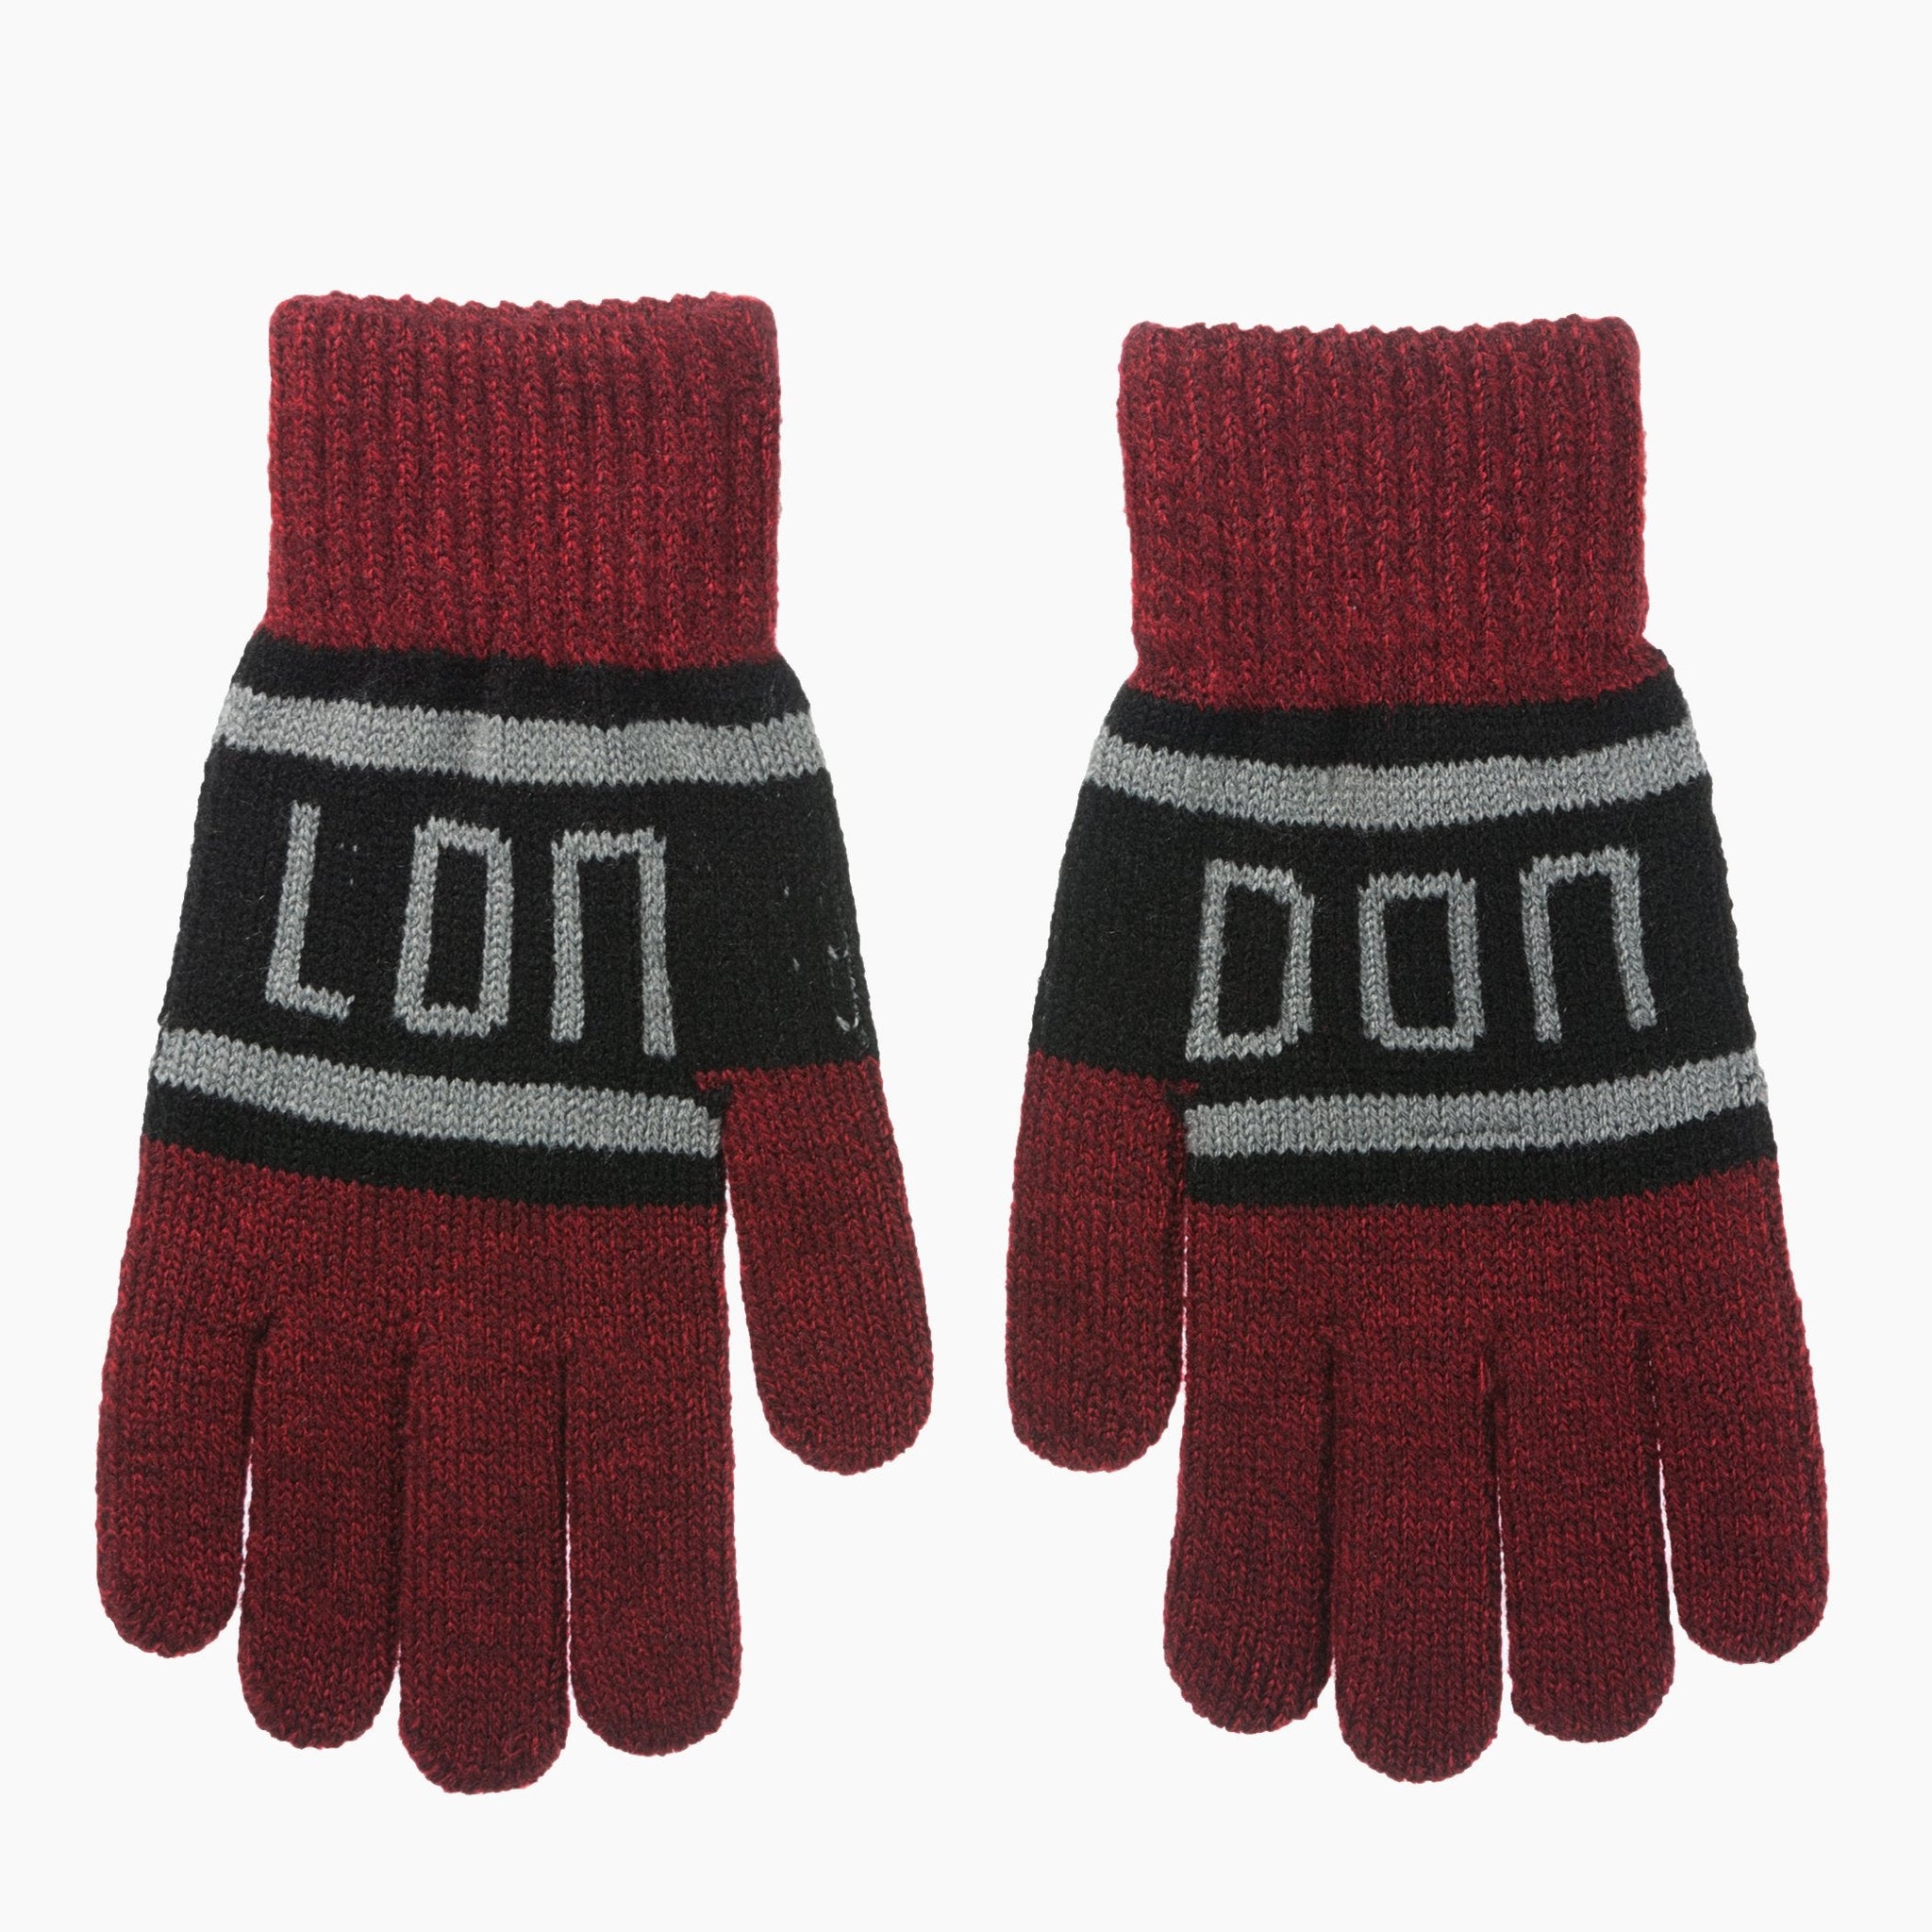 London Gloves - Robin Ruth